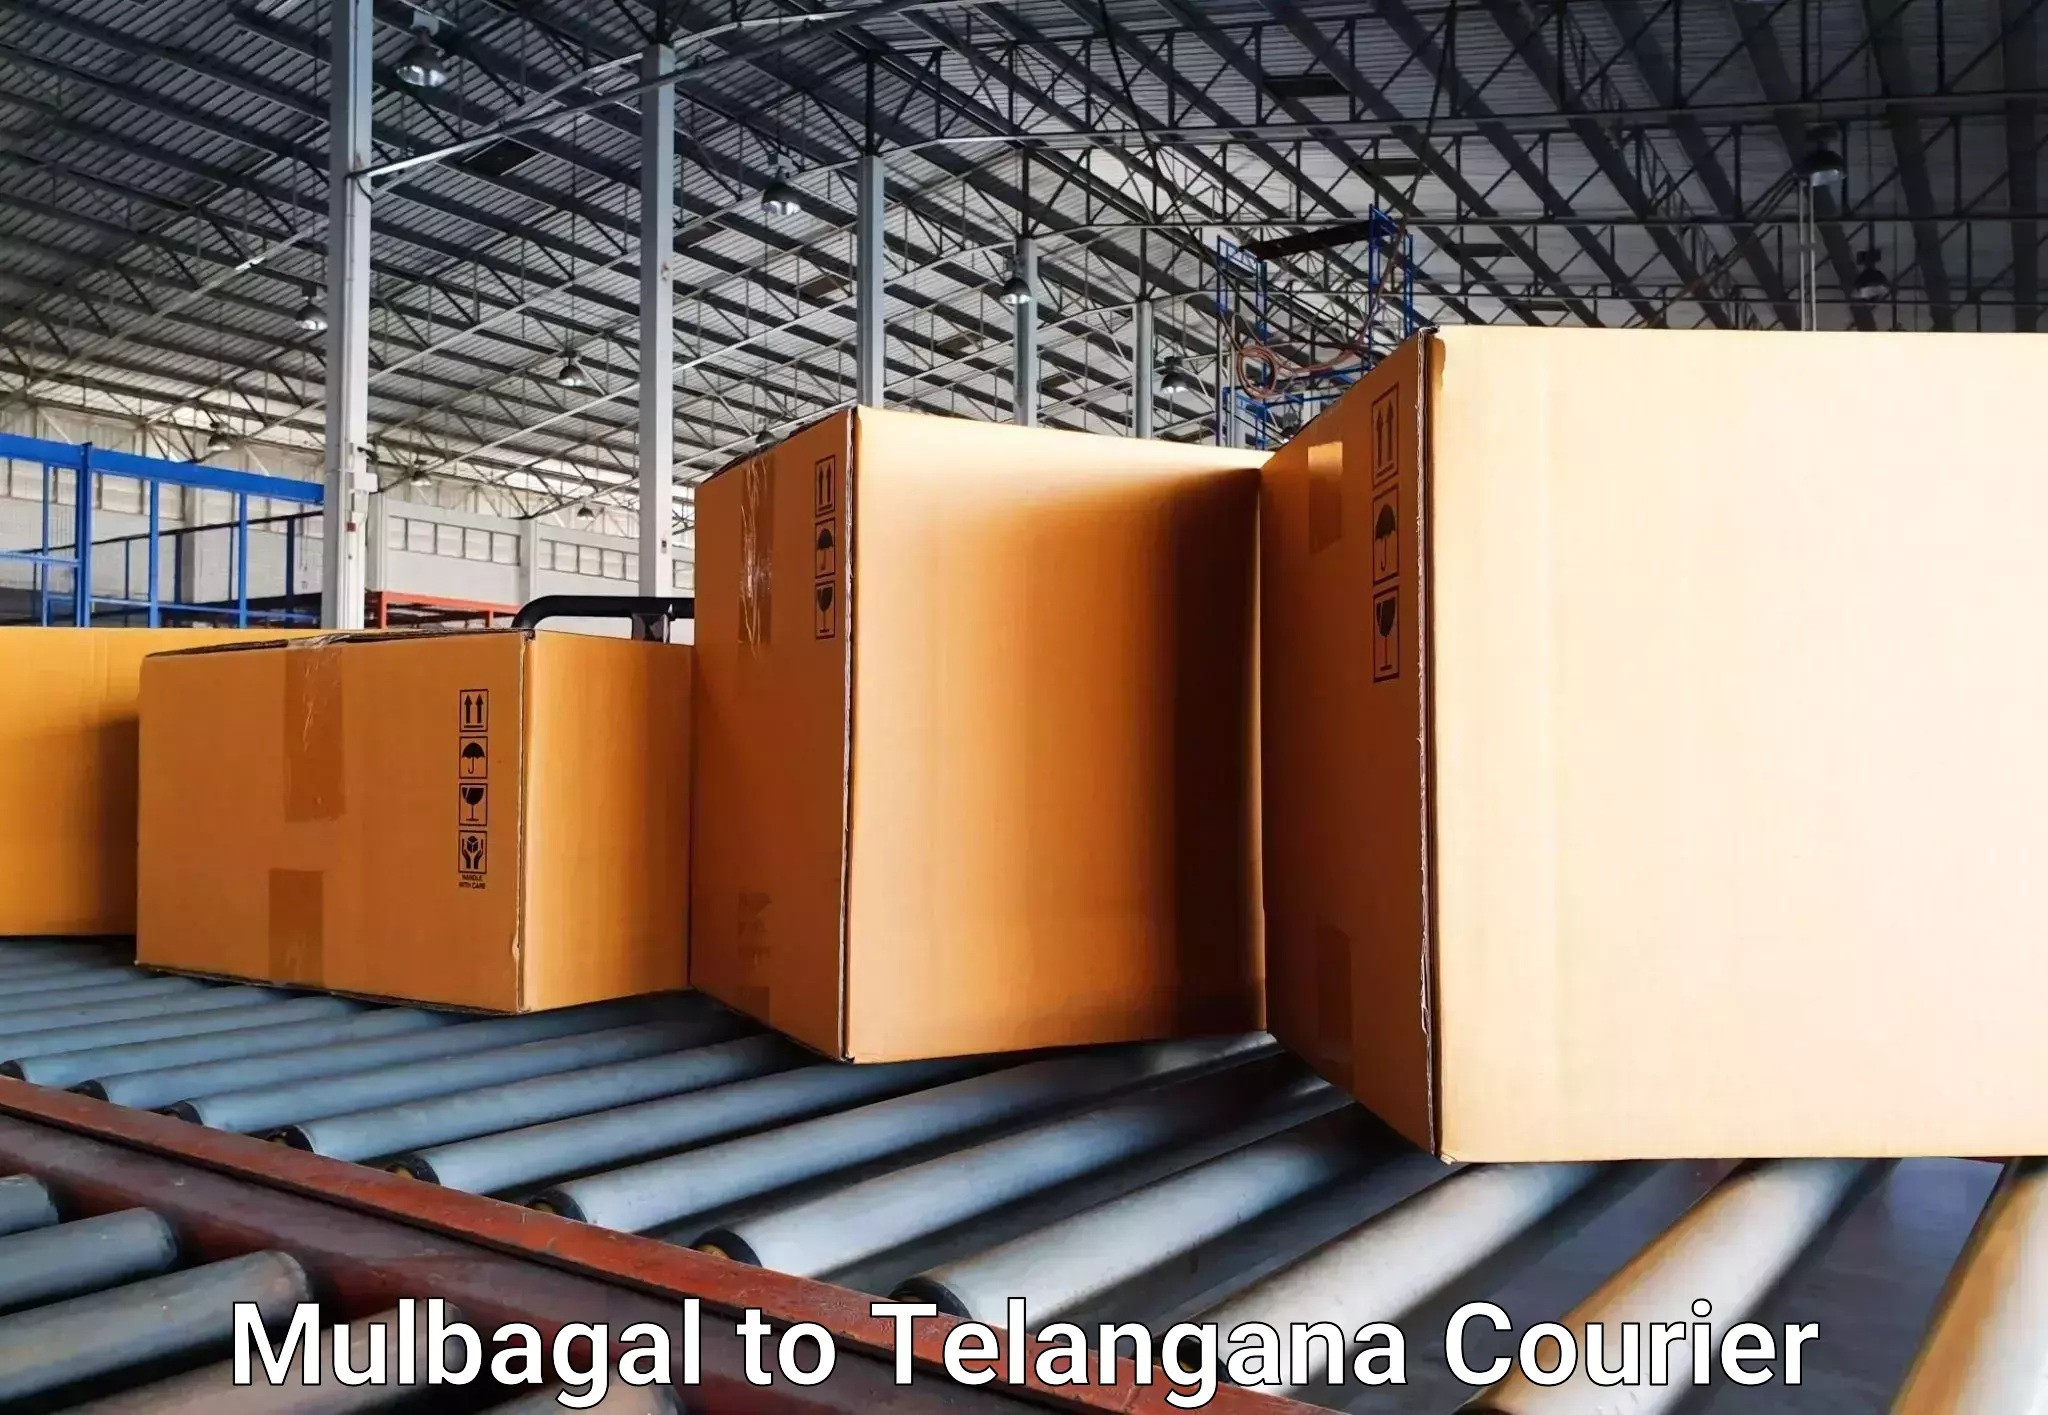 Baggage transport network Mulbagal to Sirikonda